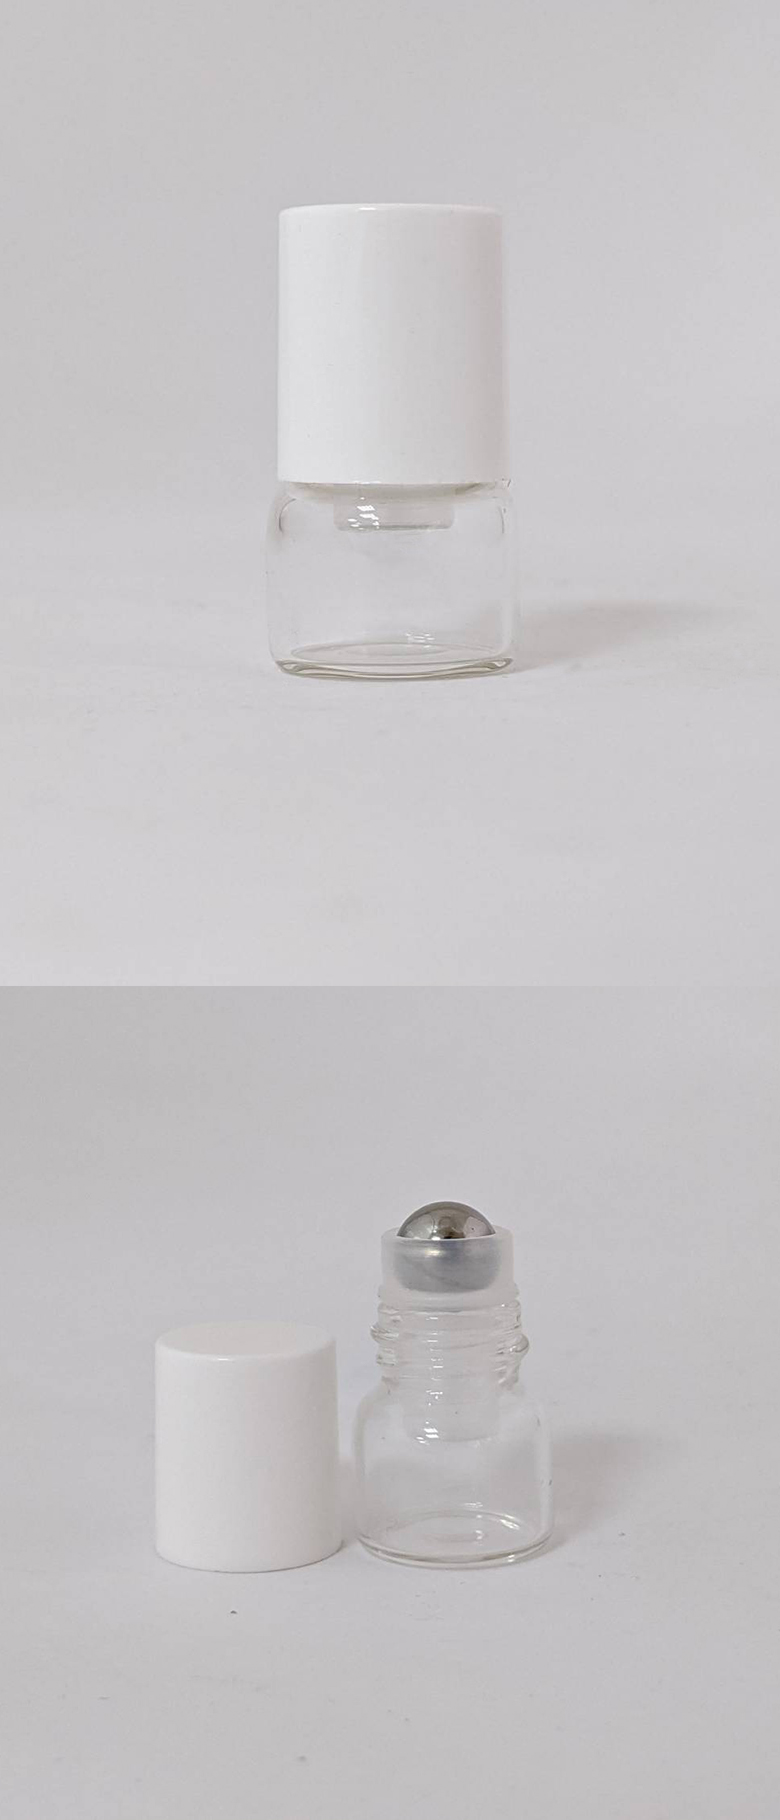 1ml 試用樣品透明滾珠空瓶